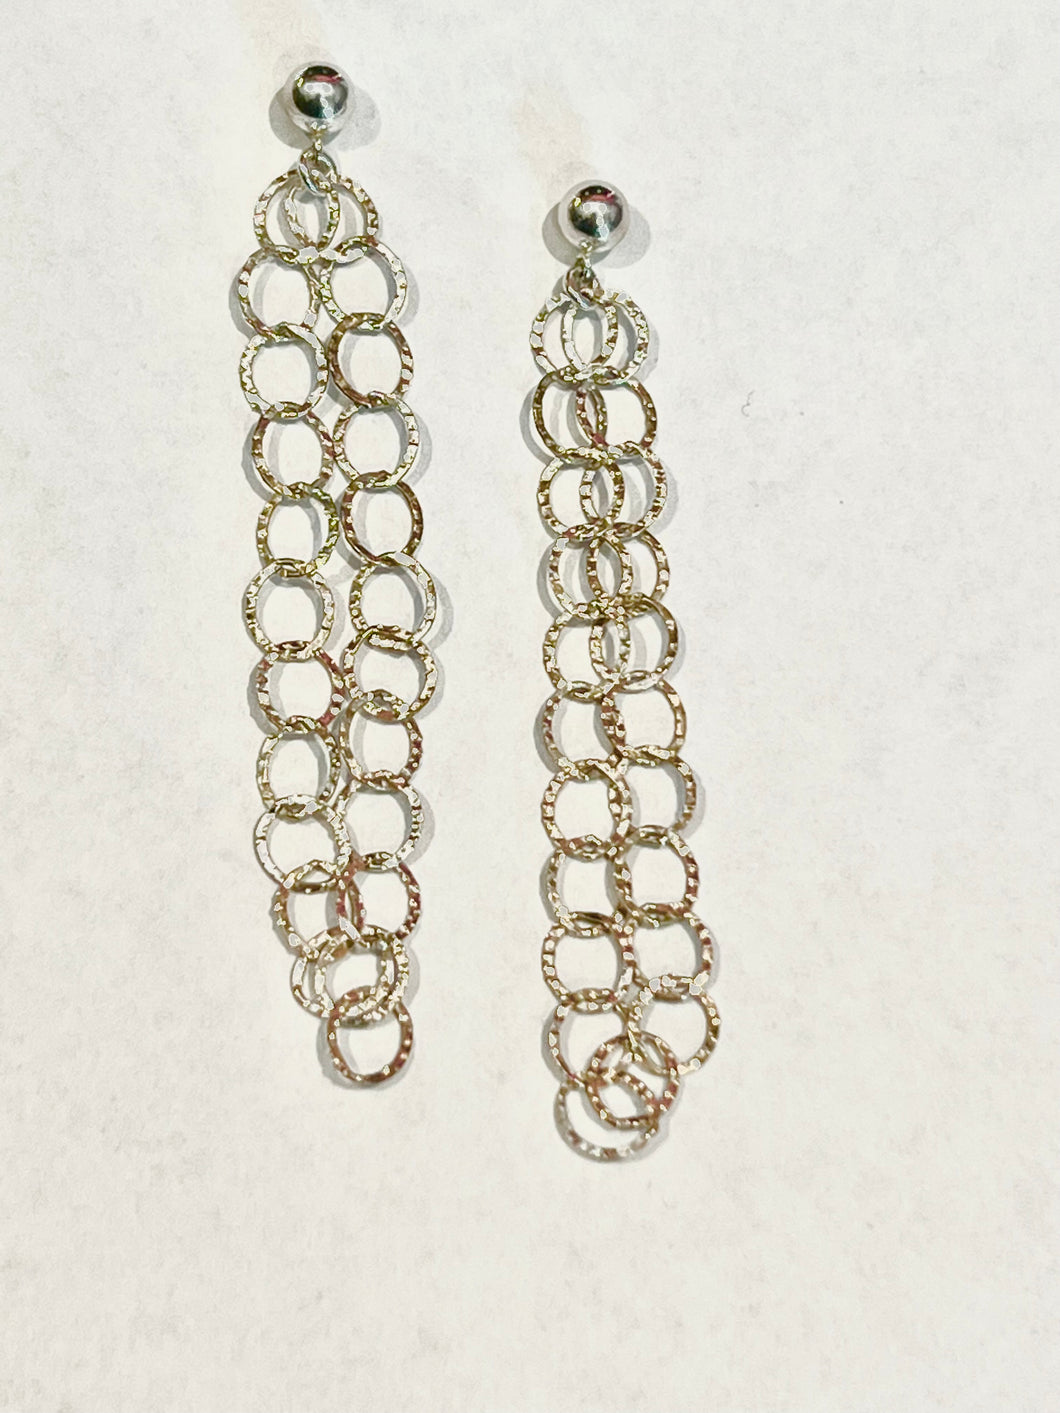 Long double chain link sterling silver earrings